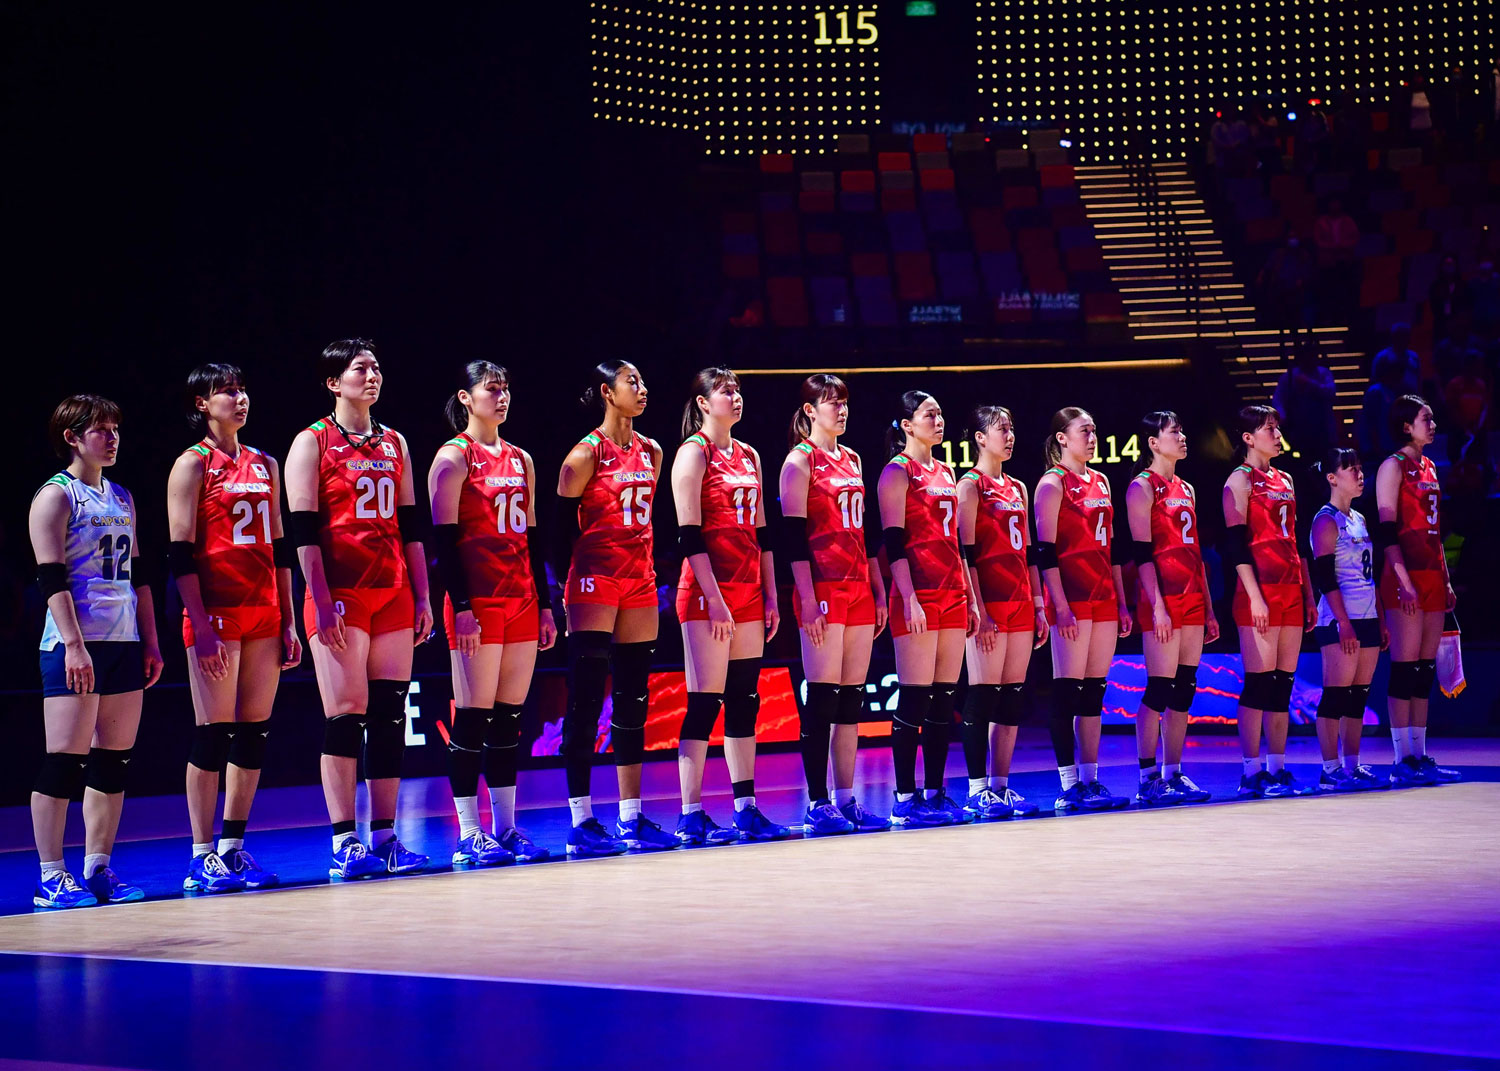 強豪ブラジルにフルセットで敗れ、中国大会は黒星発進に　女子ネーションズリーグ